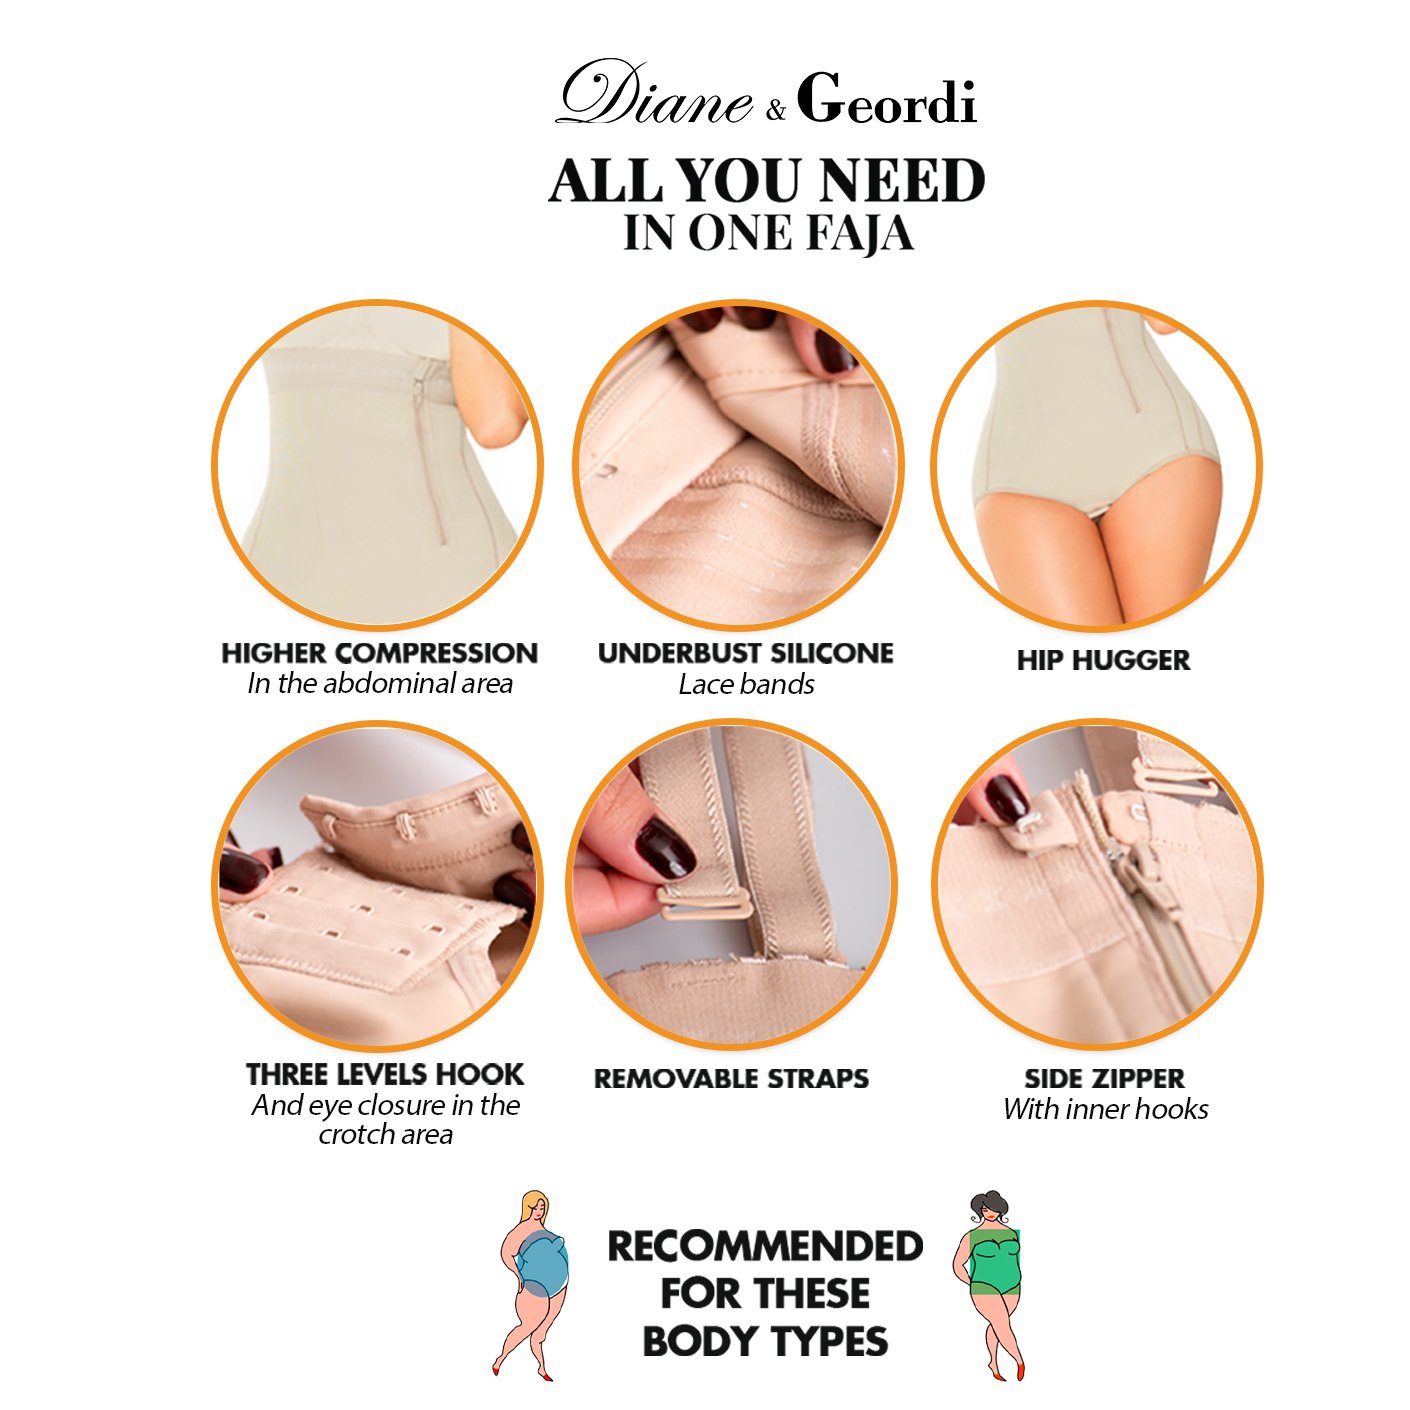 Diane & Geordi 2405 | Firm Tummy Control Seamless Strapless Shapewear Bodysuit for Women - fajacolombian